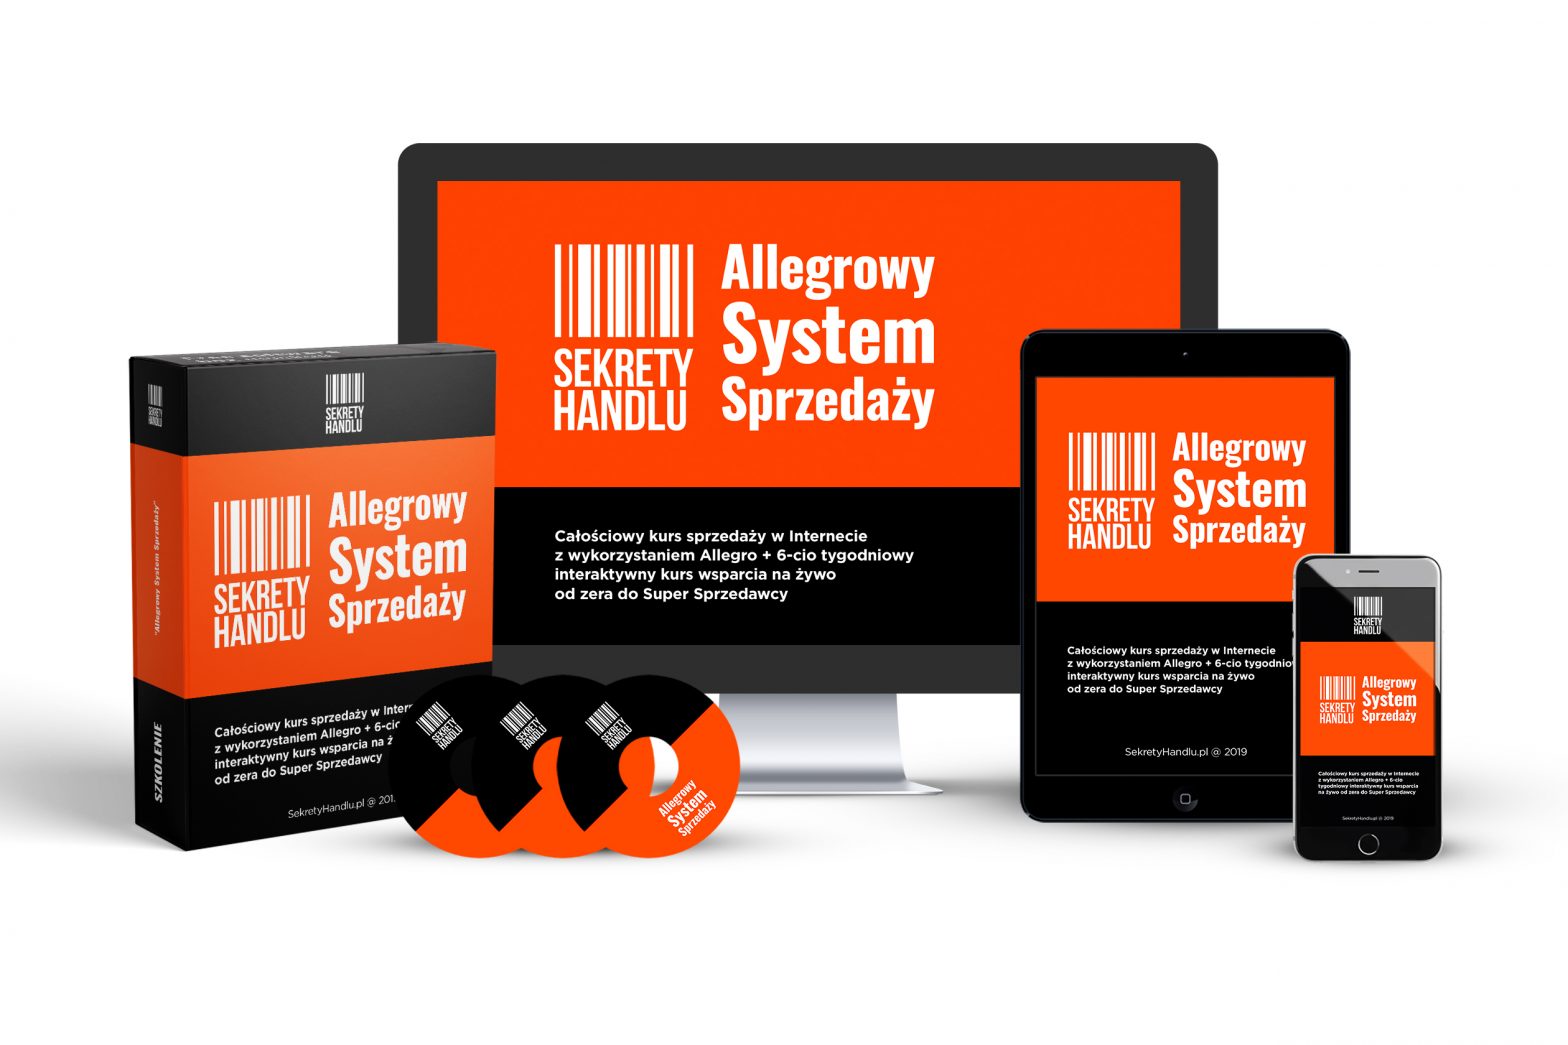 Allegrowy System Sprzedaży